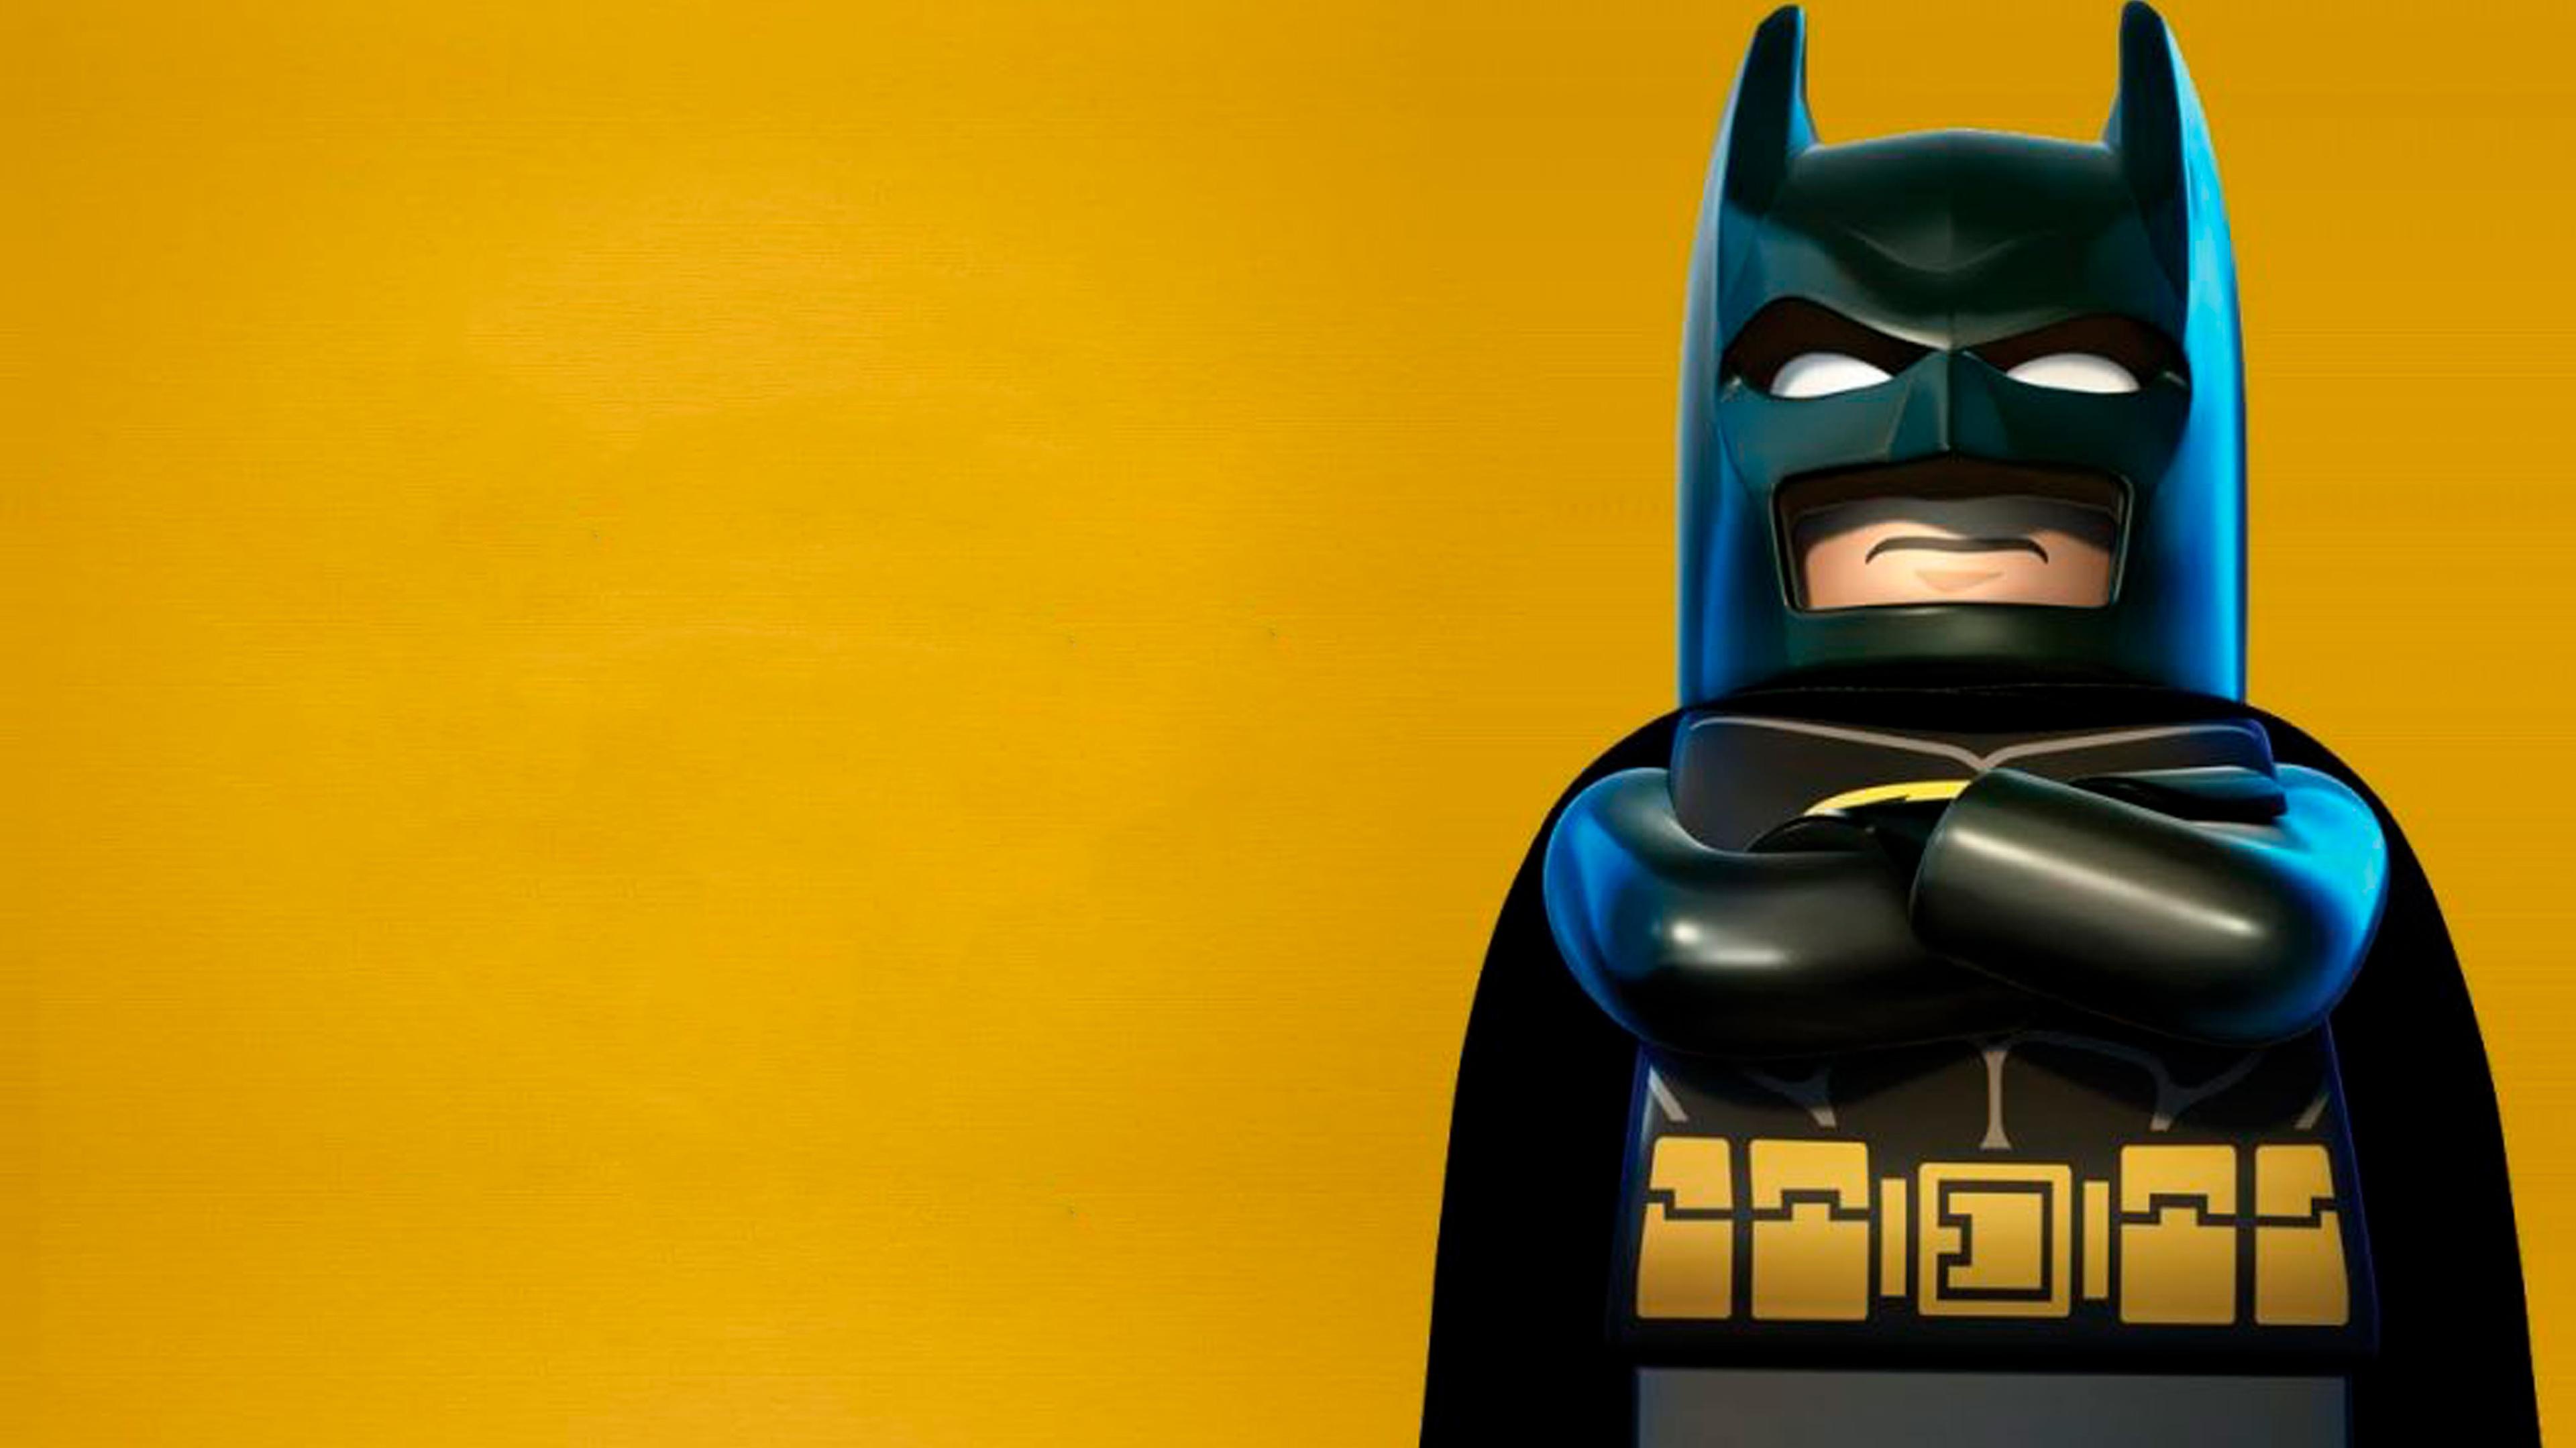 Wallpaper 4k Lego Batman